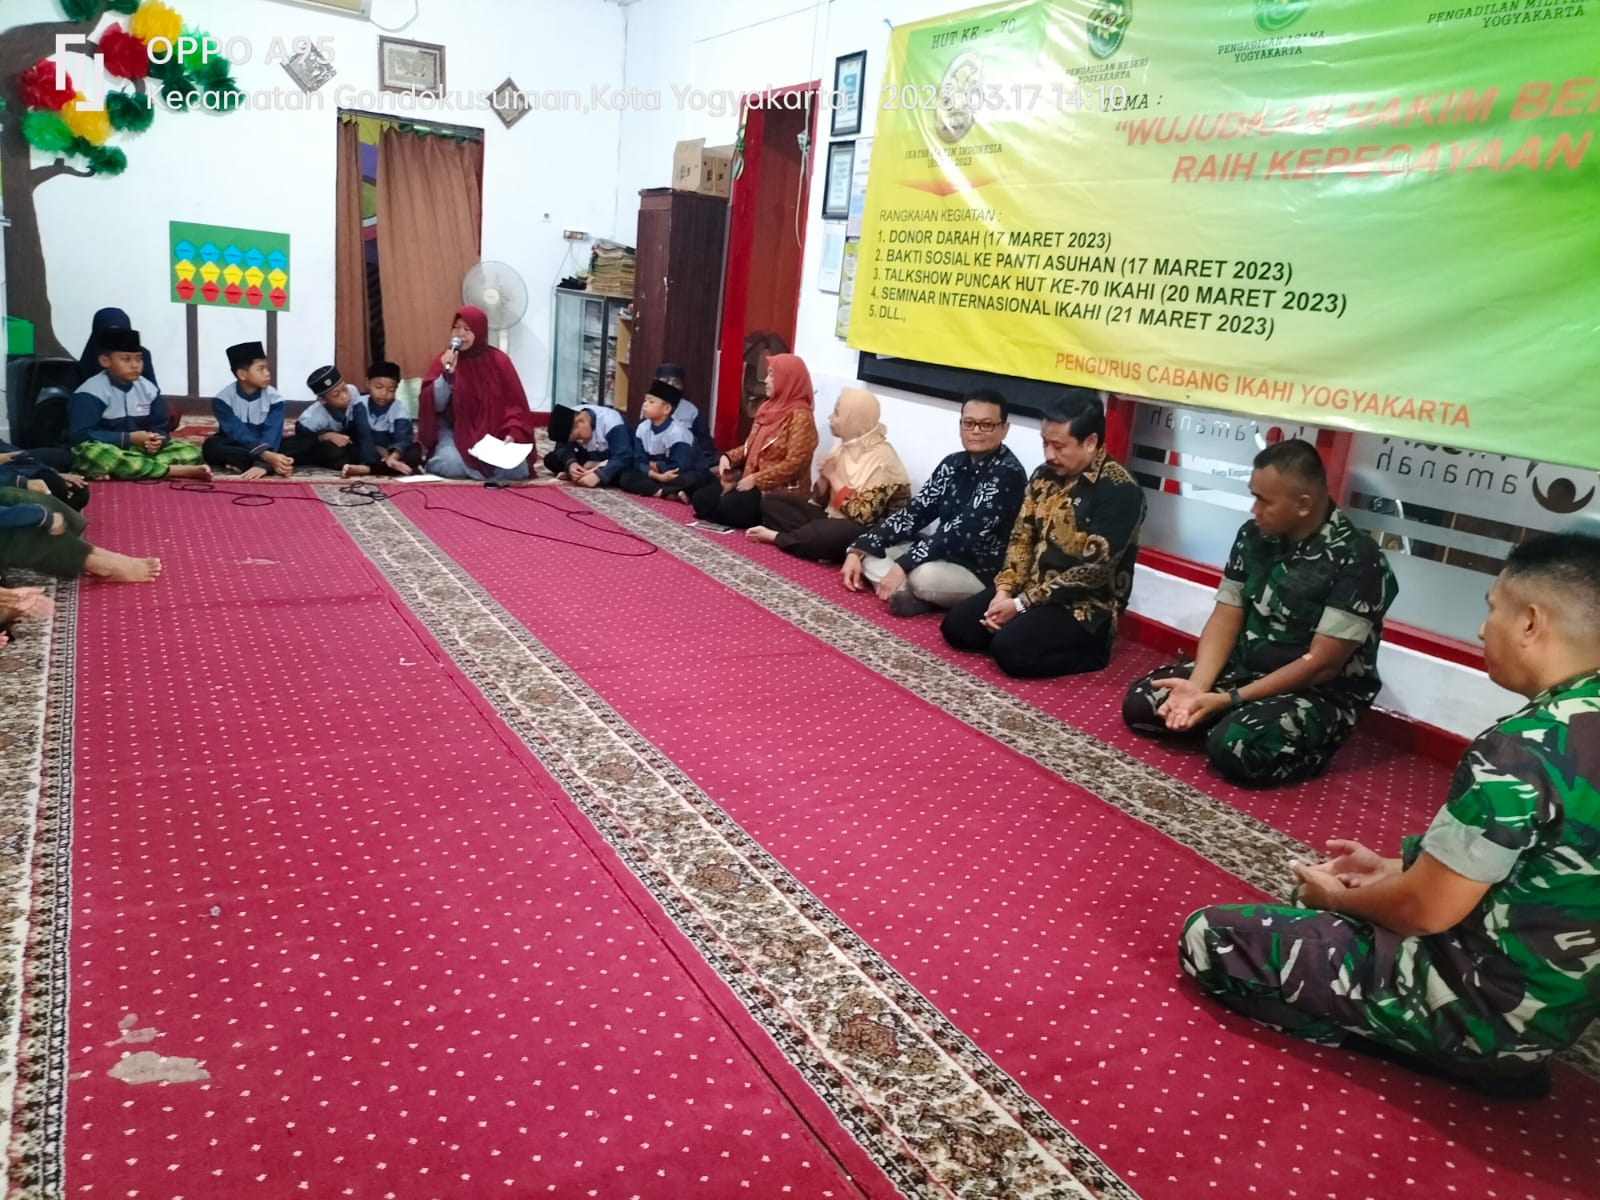 Memperingati HUT ke-70, IKAHI Cabang Yogyakarta Melaksanakan Bakti Sosial ke Panti Asuhan